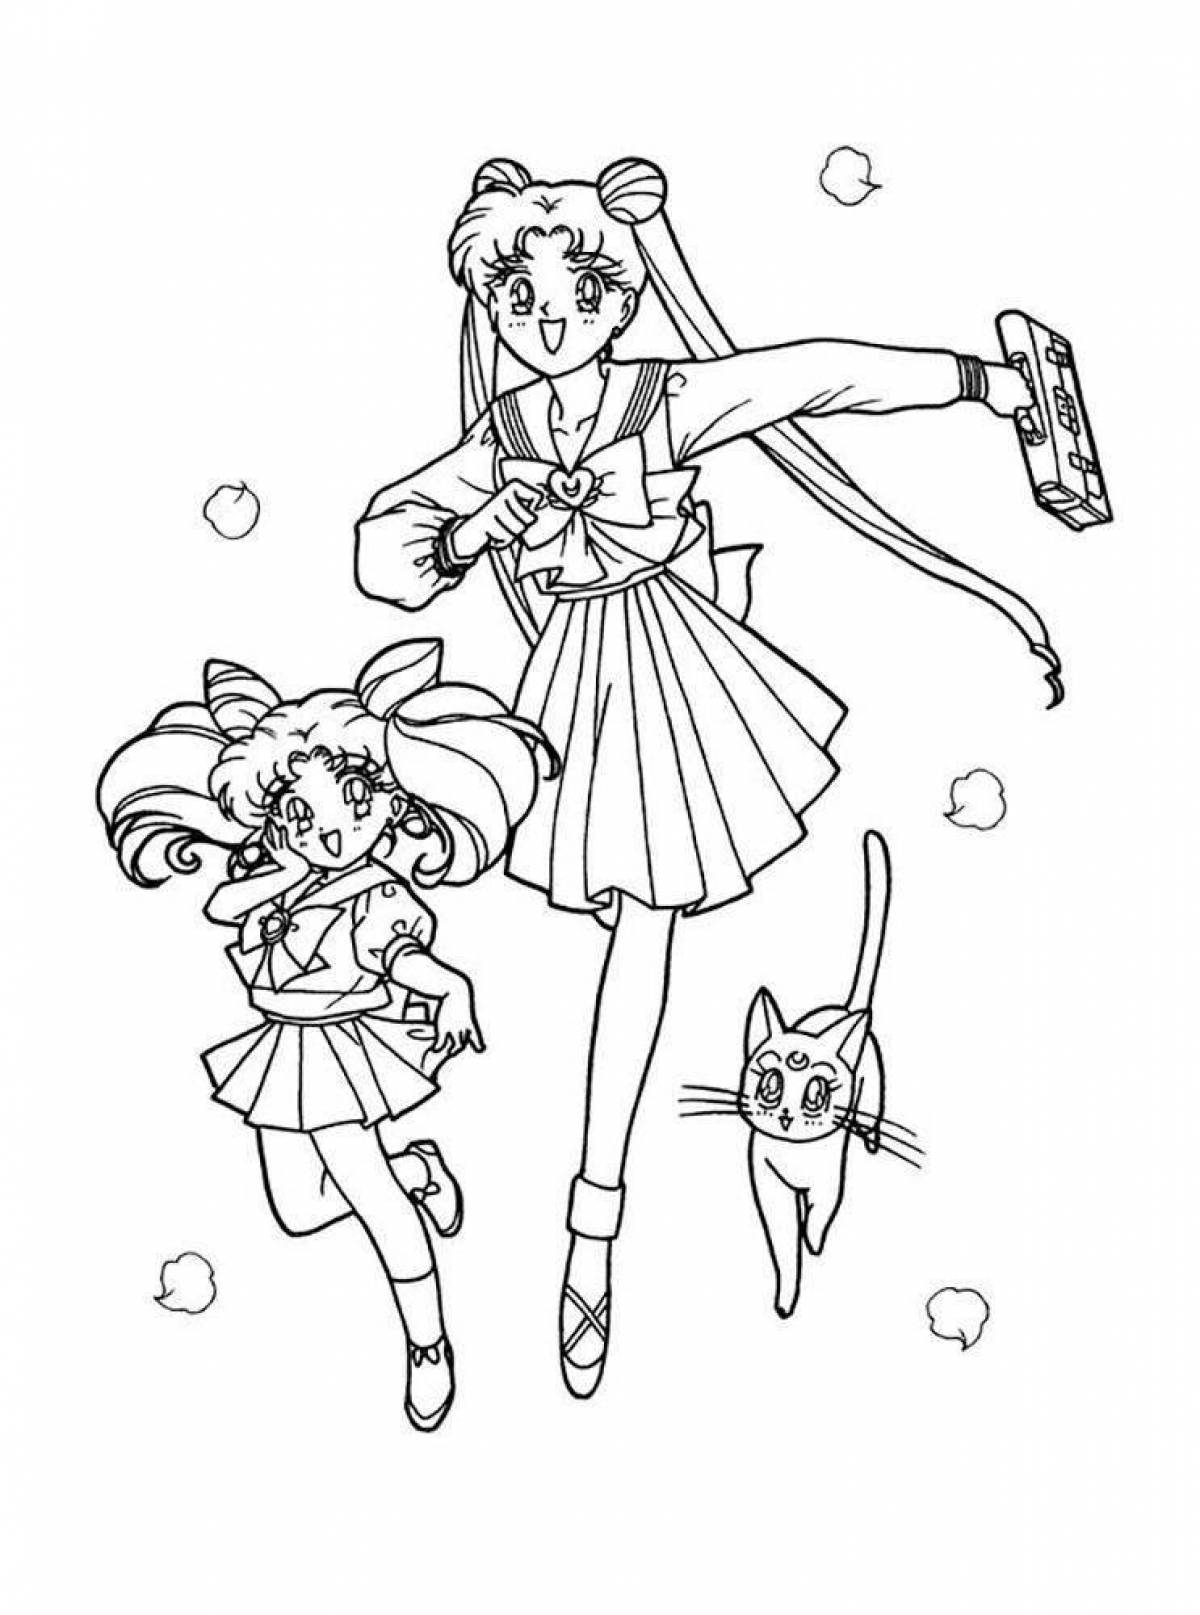 Sailor moon magic coloring page